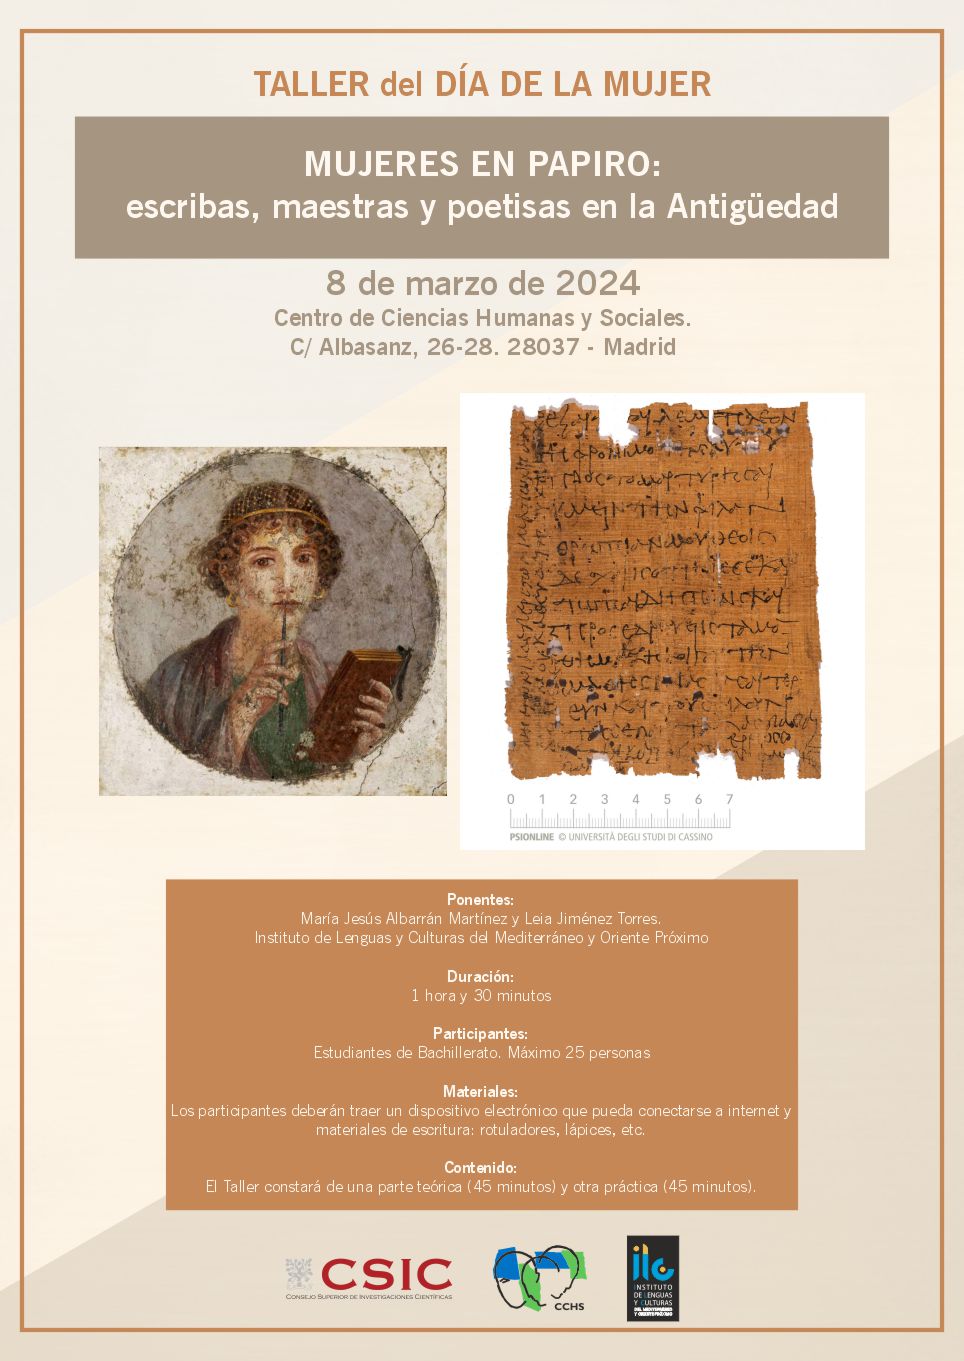 TALLER DEL DÍA DE LA MUJER: Mujeres en papiro. Escribas, maestras y poetisas en la Antigüedad